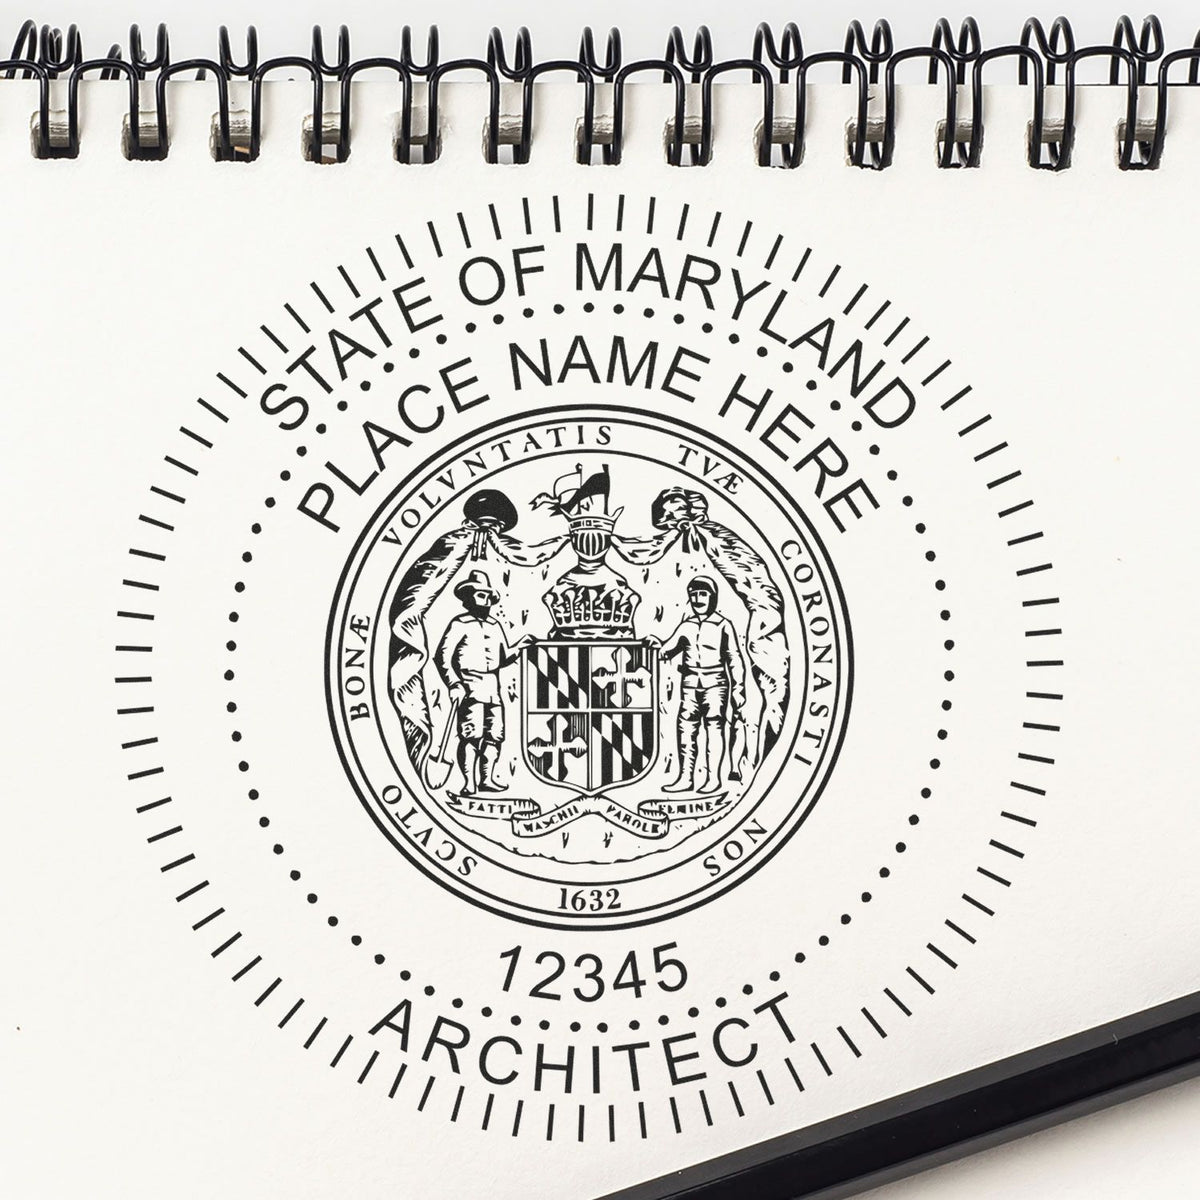 Maryland Architect Seal Stamp Lifestyle Photo